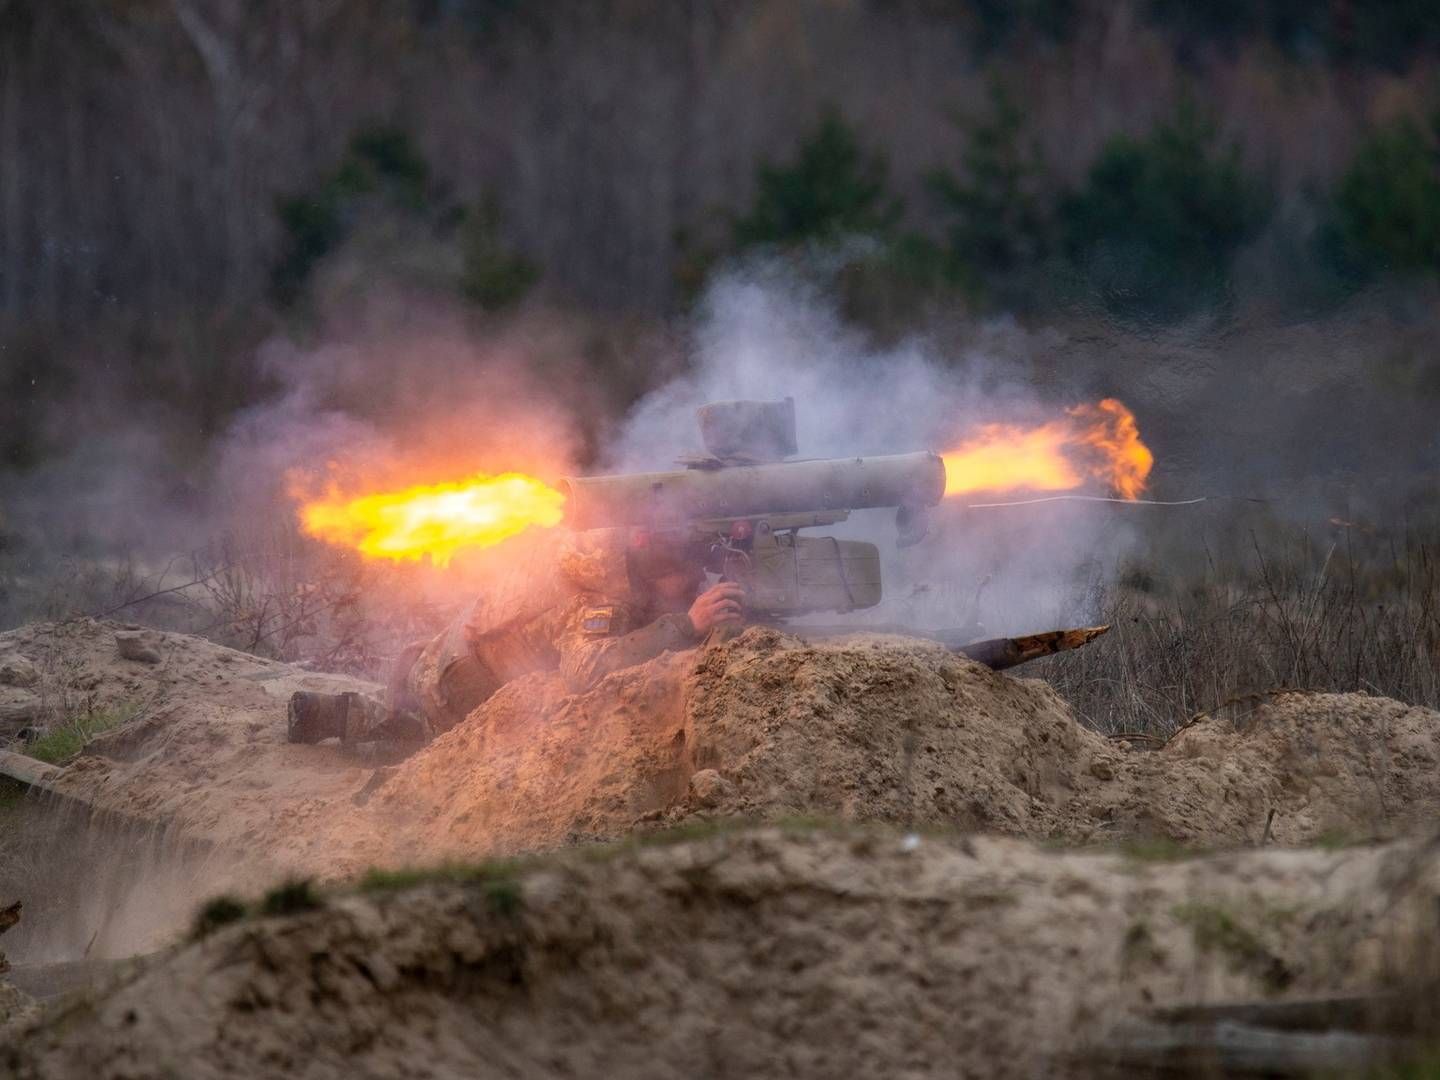 Foto: UKRAINIAN ARMED FORCES/VIA REUTERS / X80001